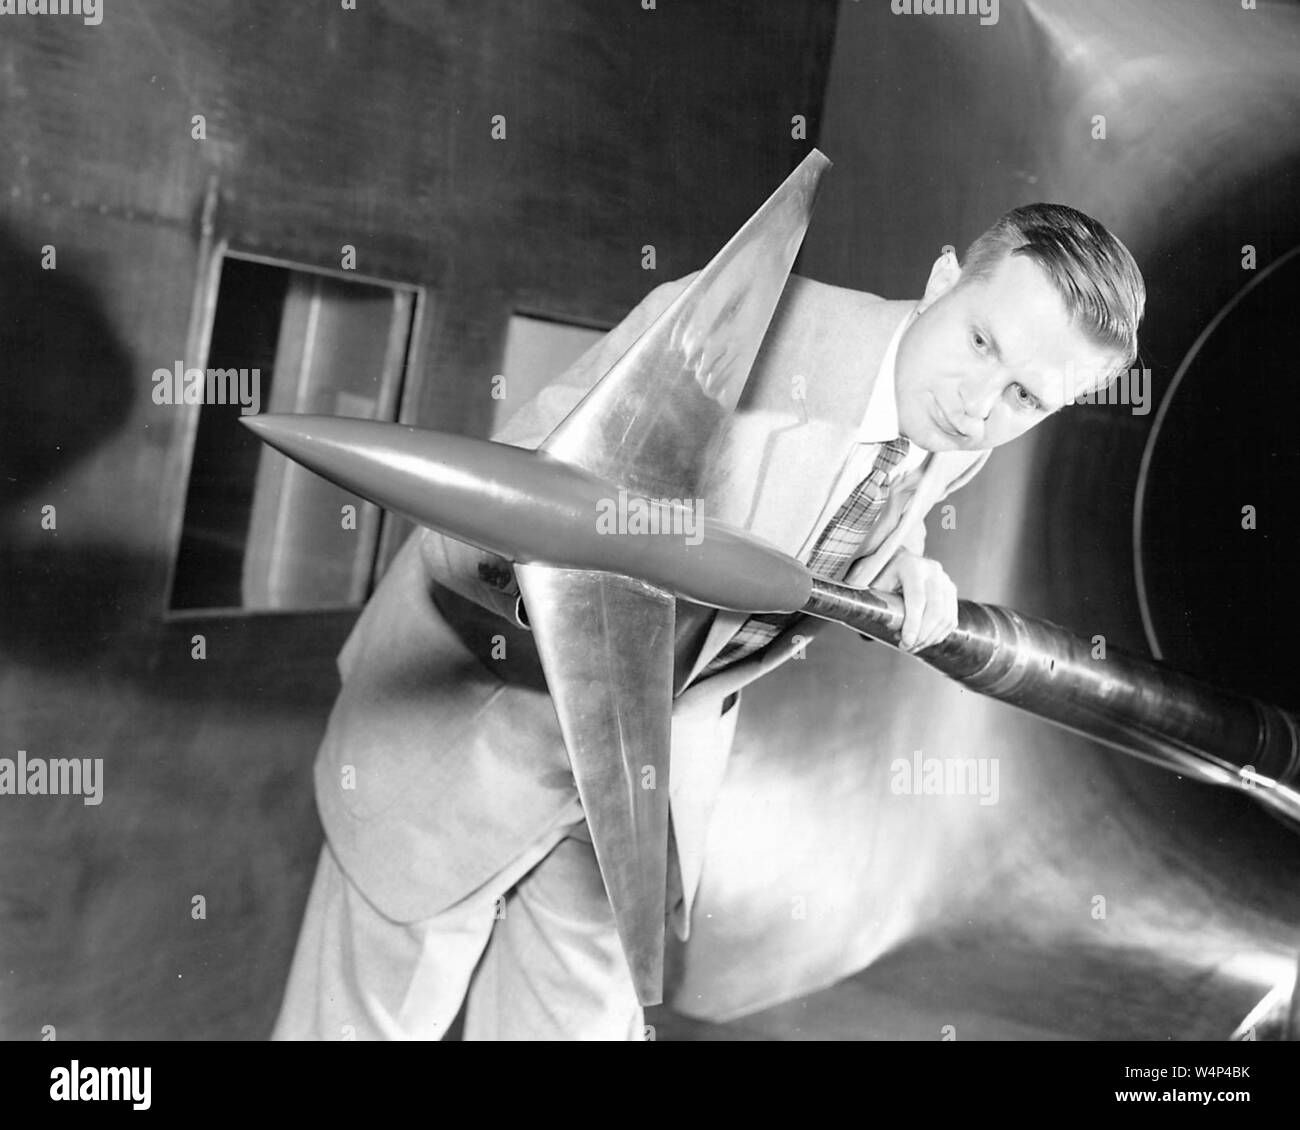 Pioniere dell'aviazione Richard Whitcomb detiene un'area governata aerei di modello di prova in Langley 8-ft transonico tunnel del vento, Langley Research Center, Hampton, Virginia, 20 aprile 1955. Immagine cortesia Nazionale Aeronautica e Spaziale Administration (NASA). () Foto Stock